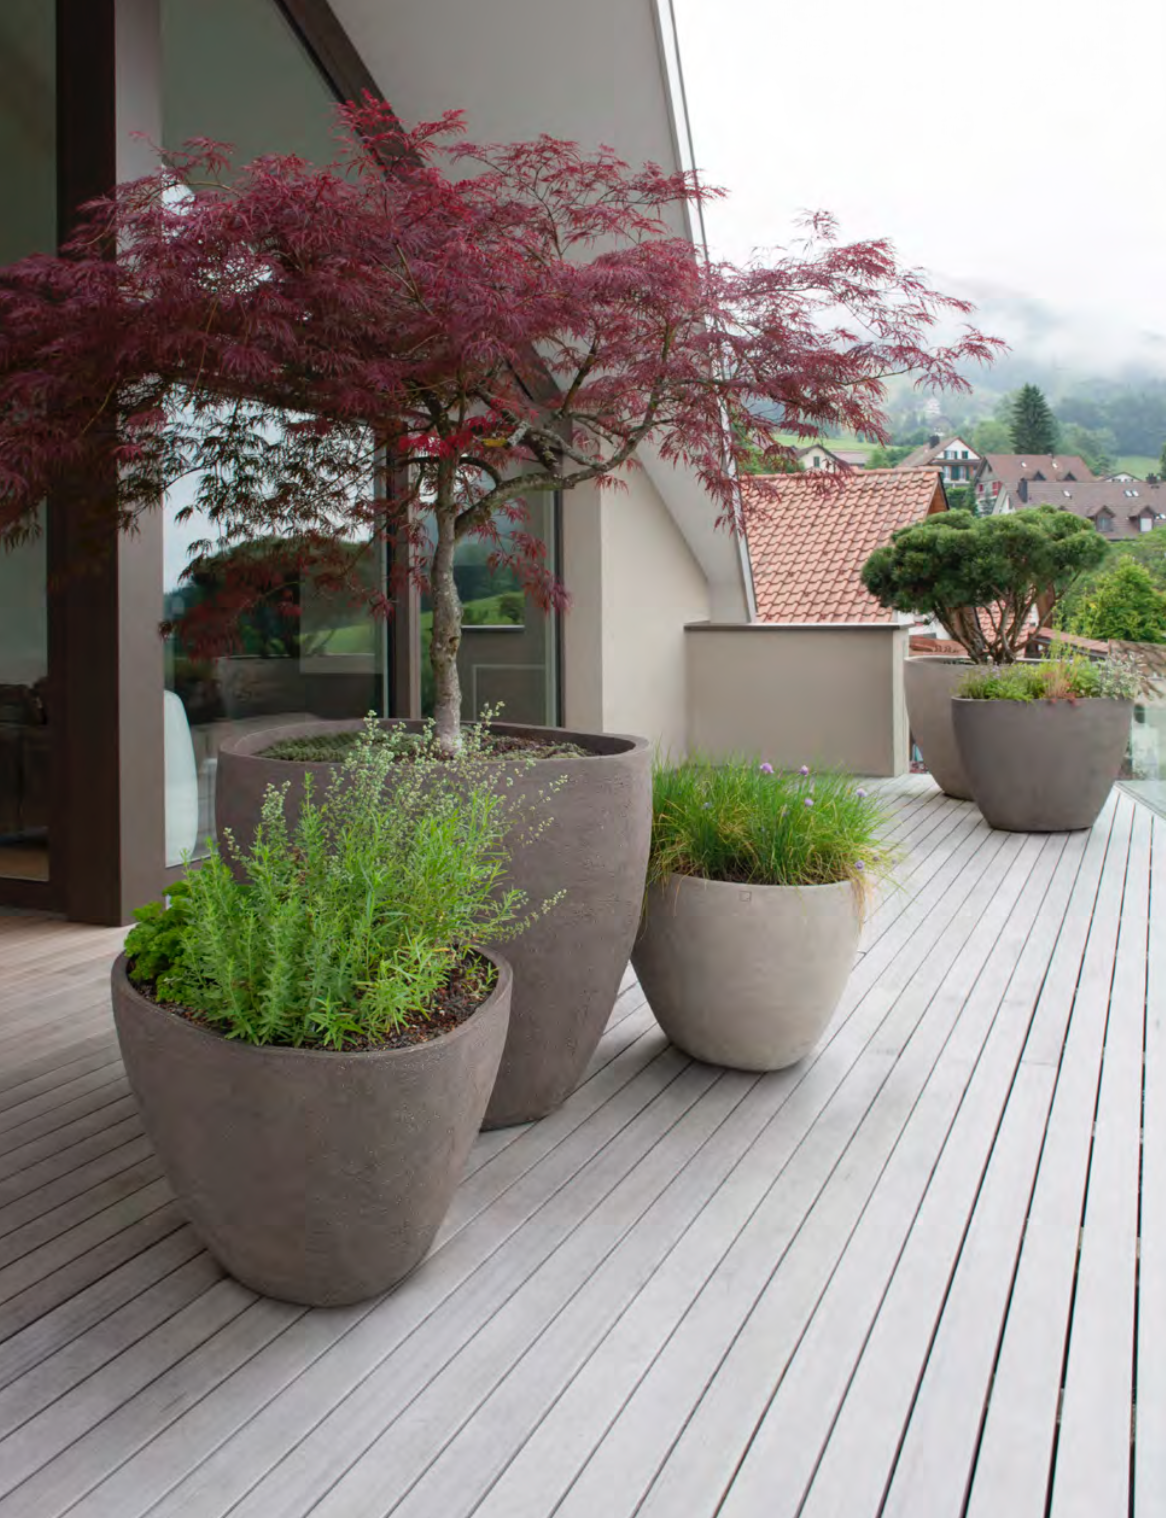 Reinig de vloer Kraan vier keer Bloempotten buiten maken je terras in één oogopslag gezelliger: — Loncin  Interieur | A Beautiful Home